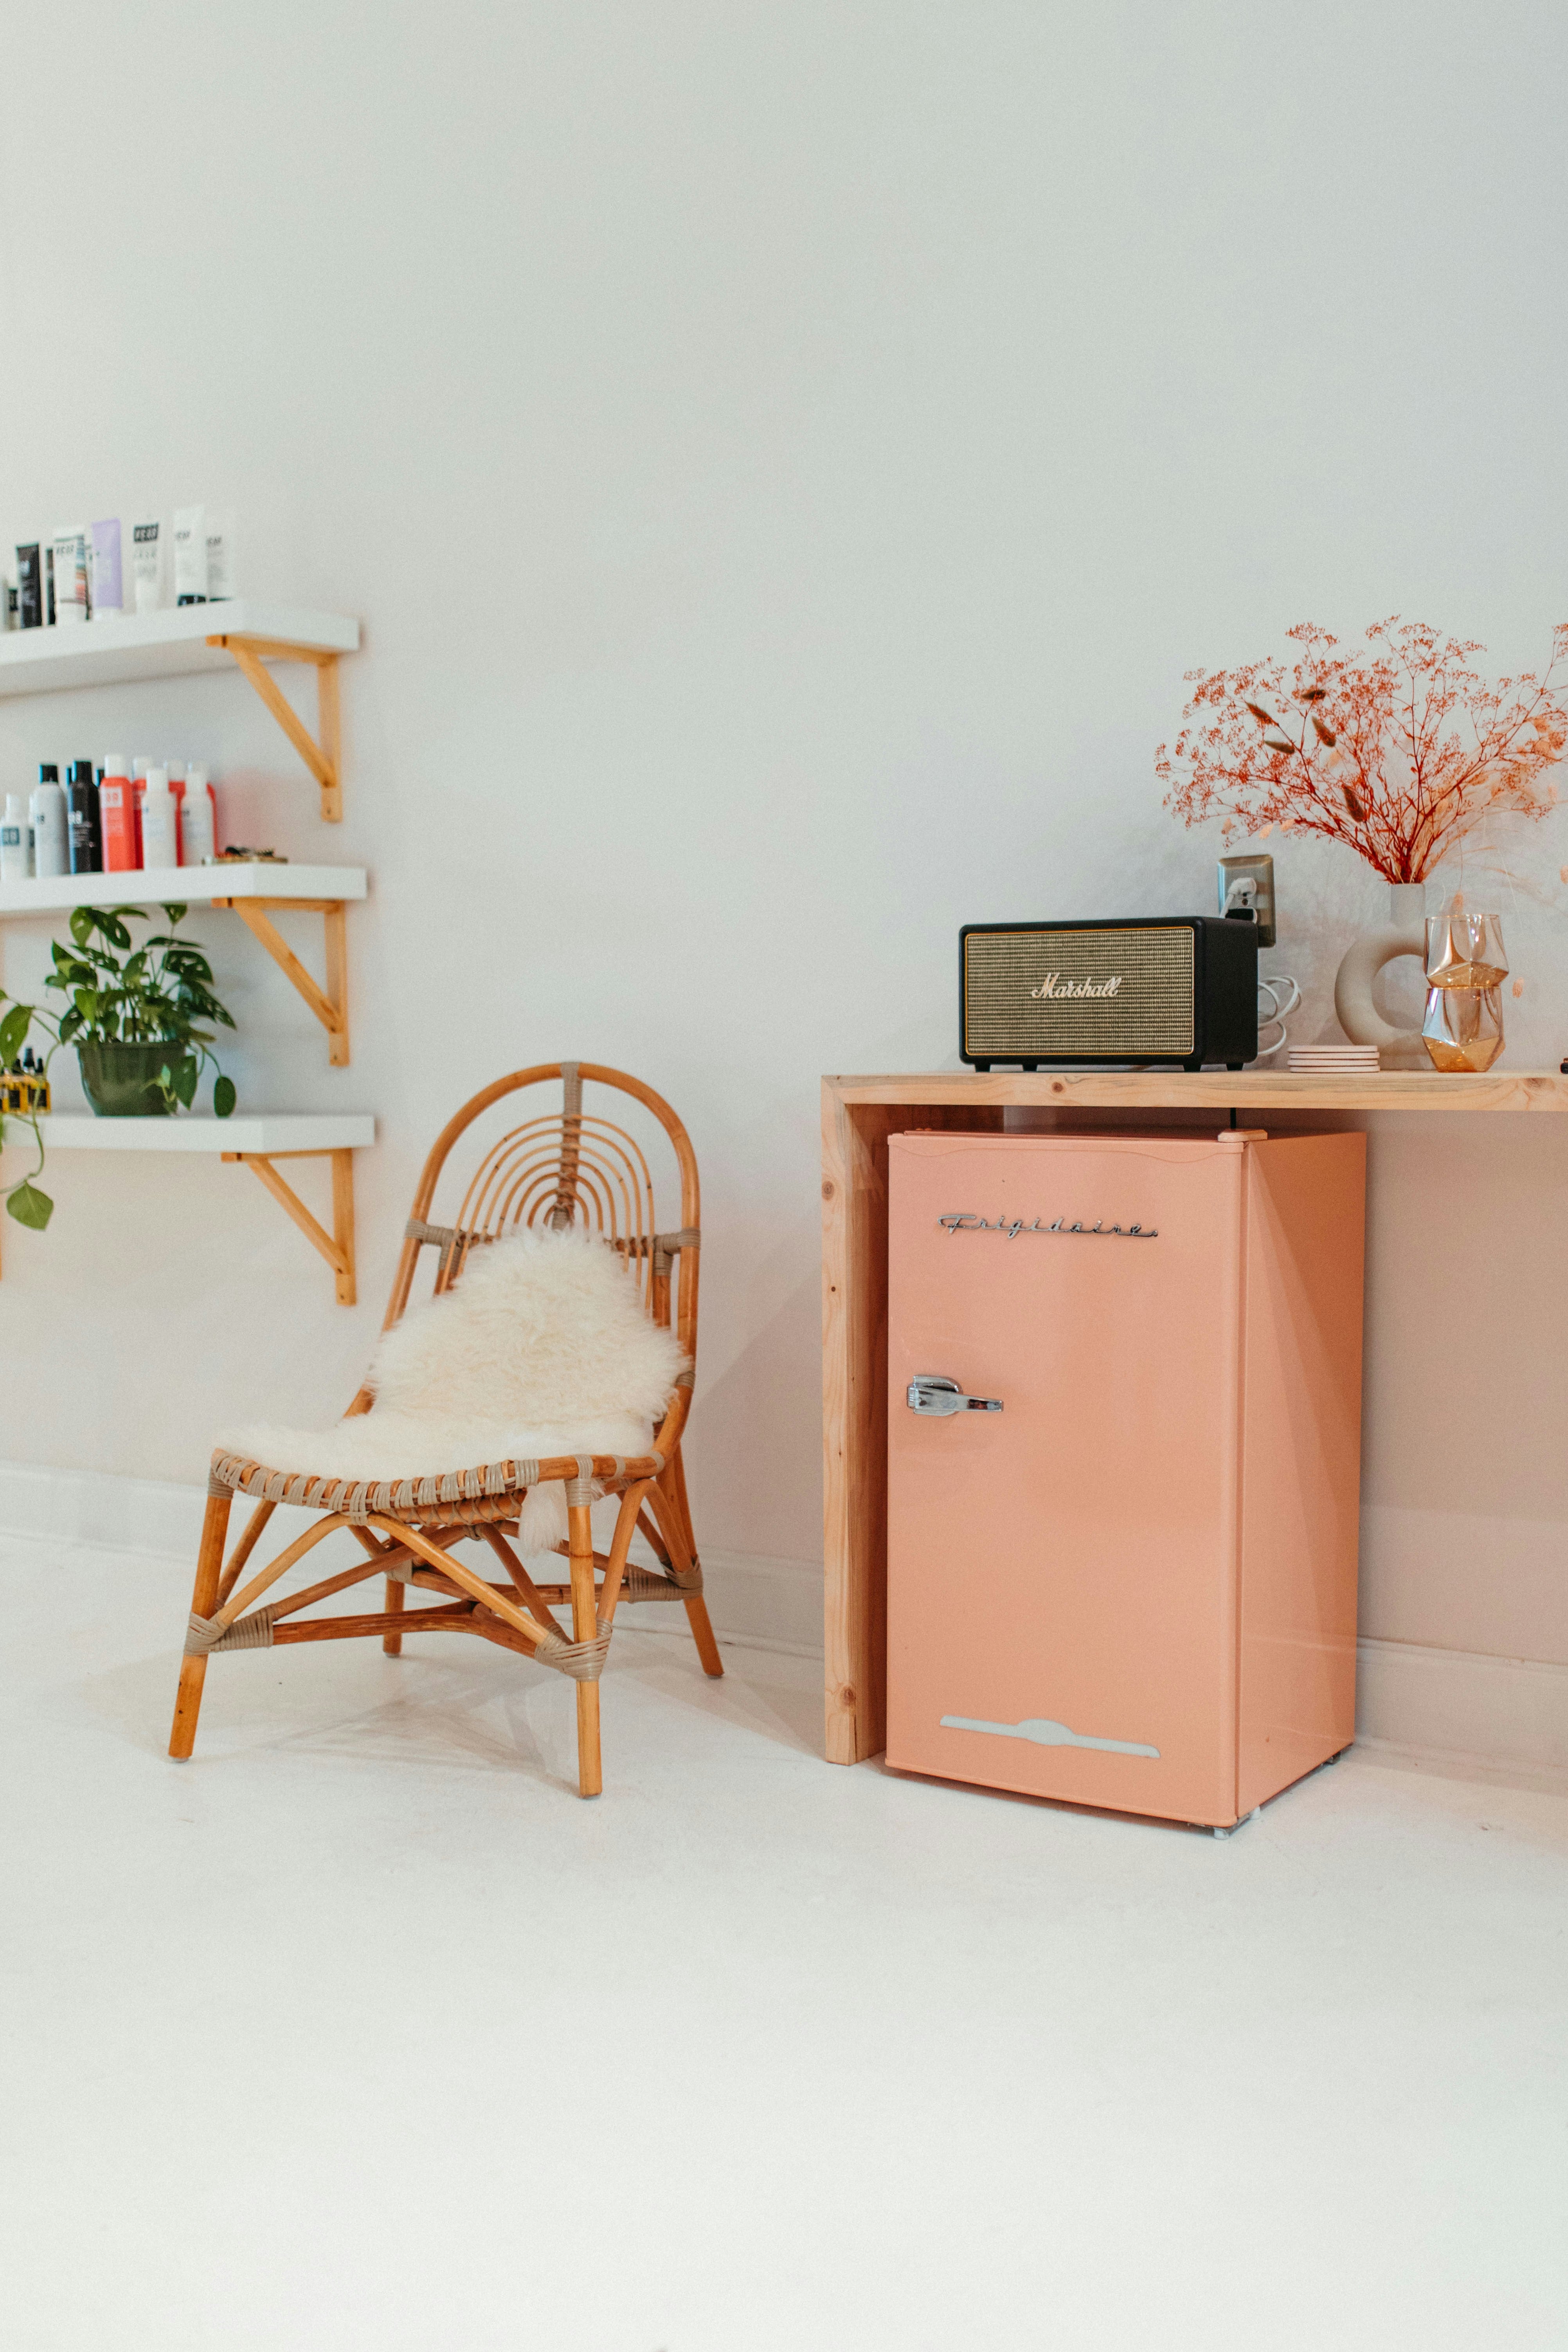 Charming And Compact Discover The Perfect Retro Small Refrigerator | Fridge.com